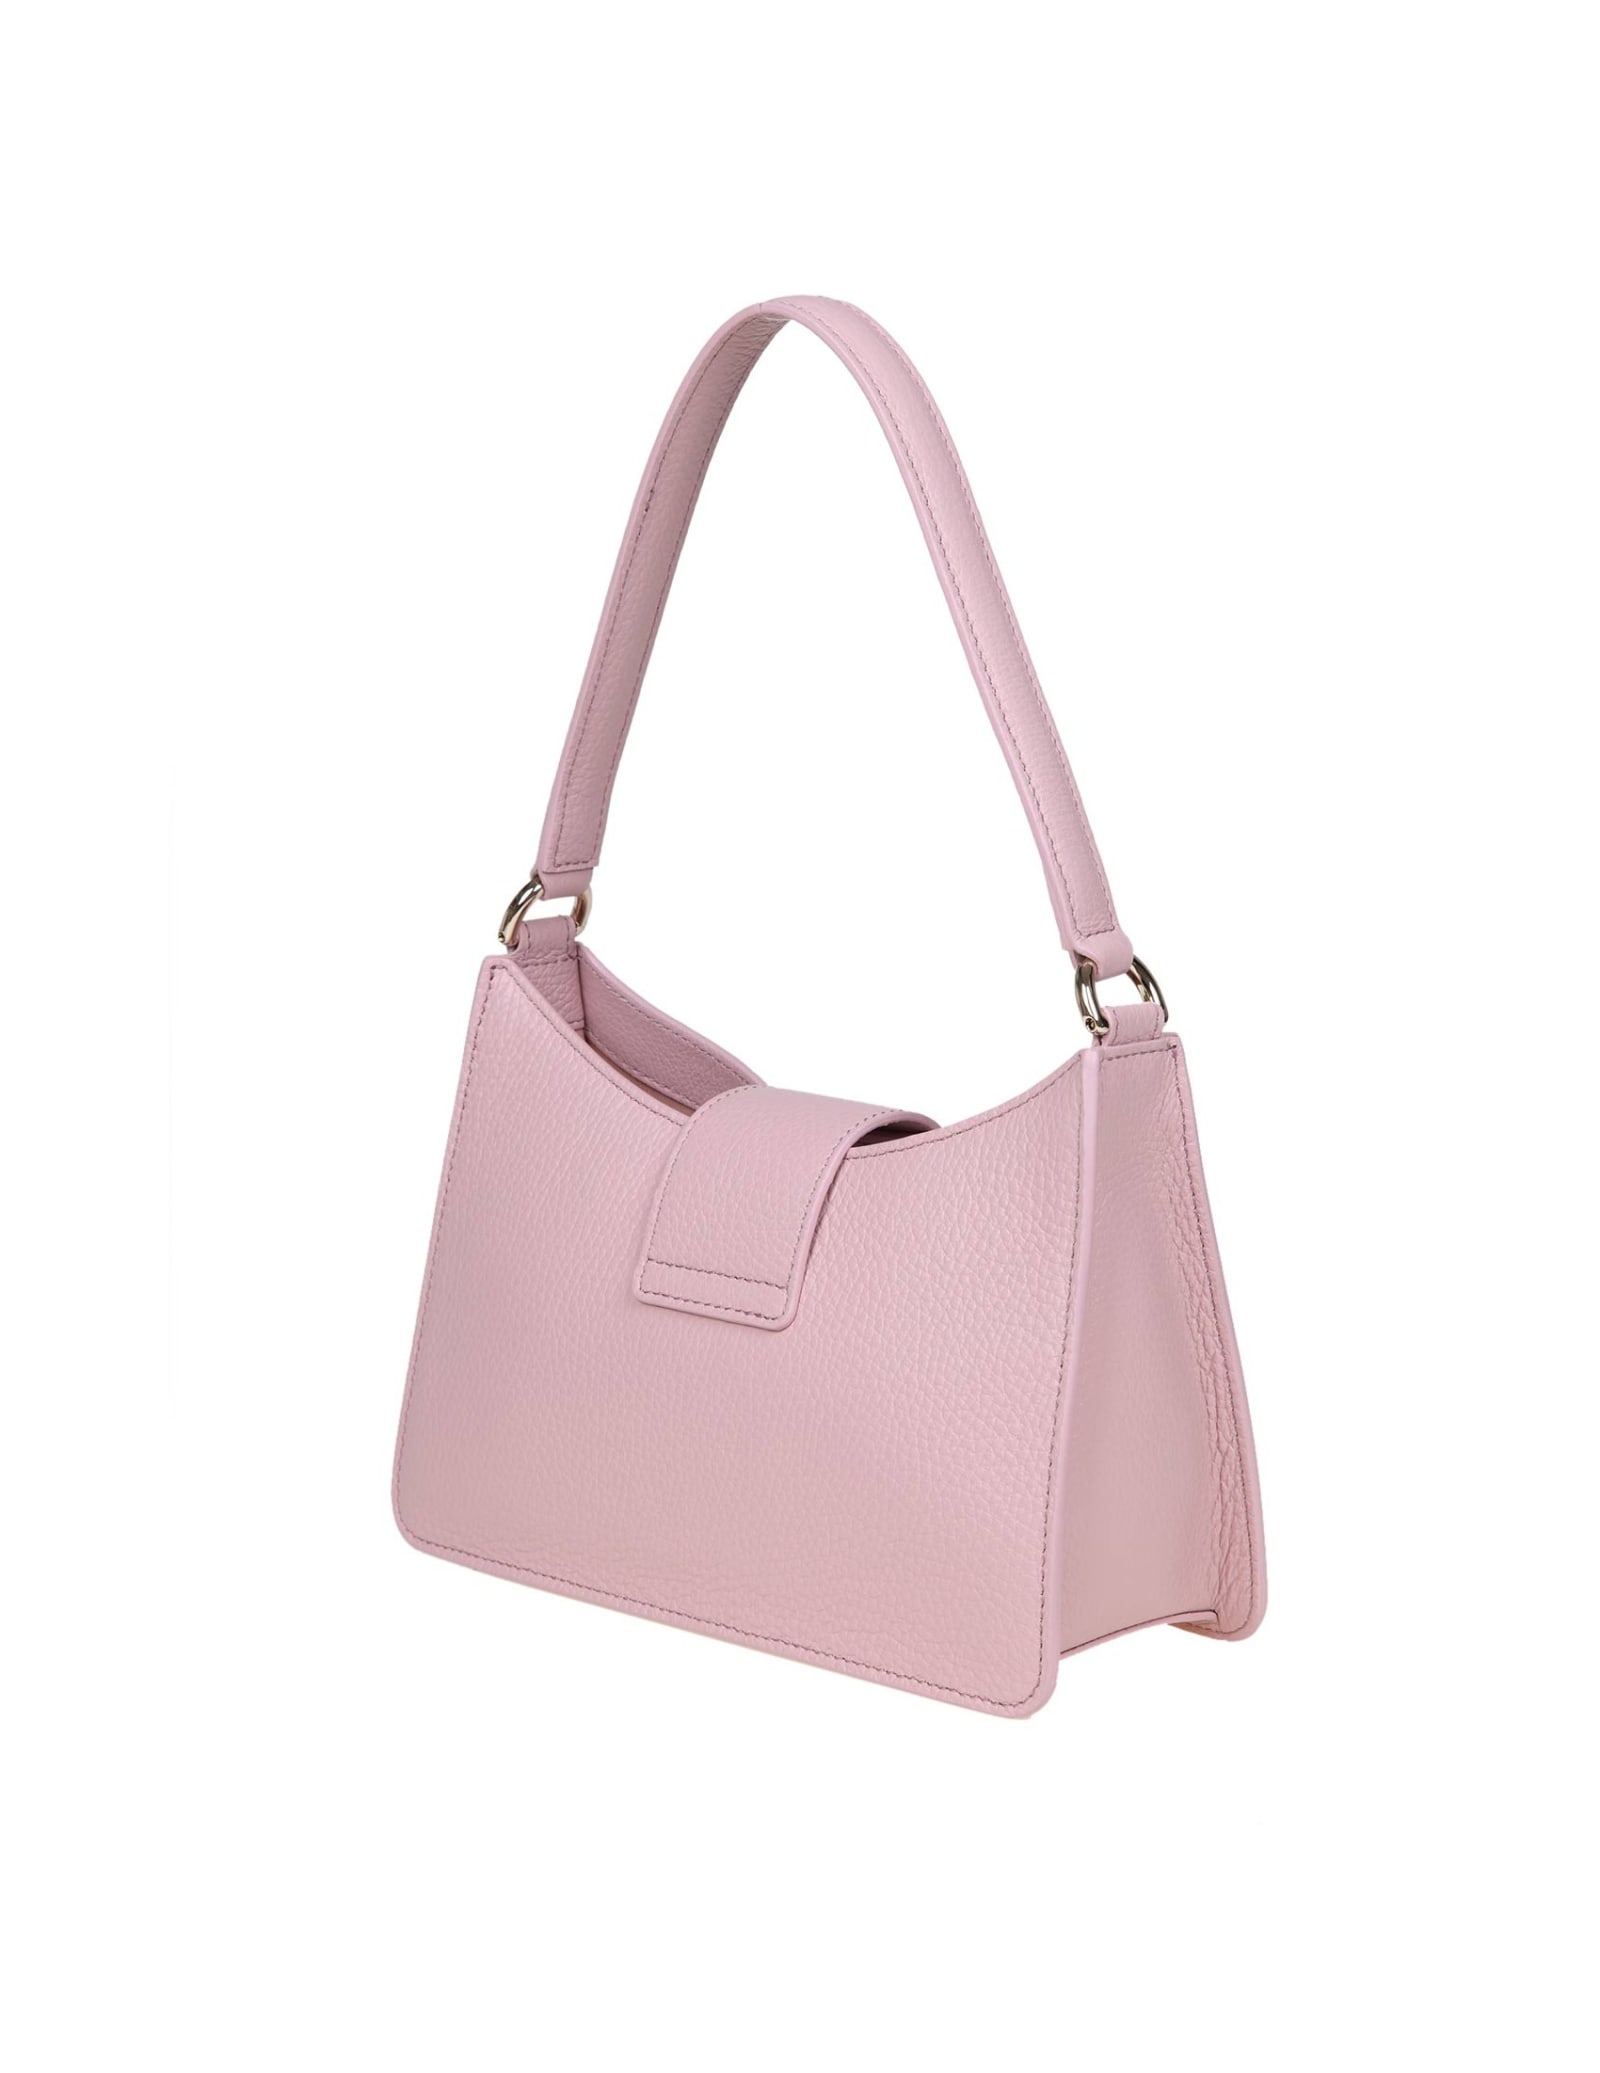 Shop Furla 1927 S Shoulder Bag In Pink Soft Leather In Alba